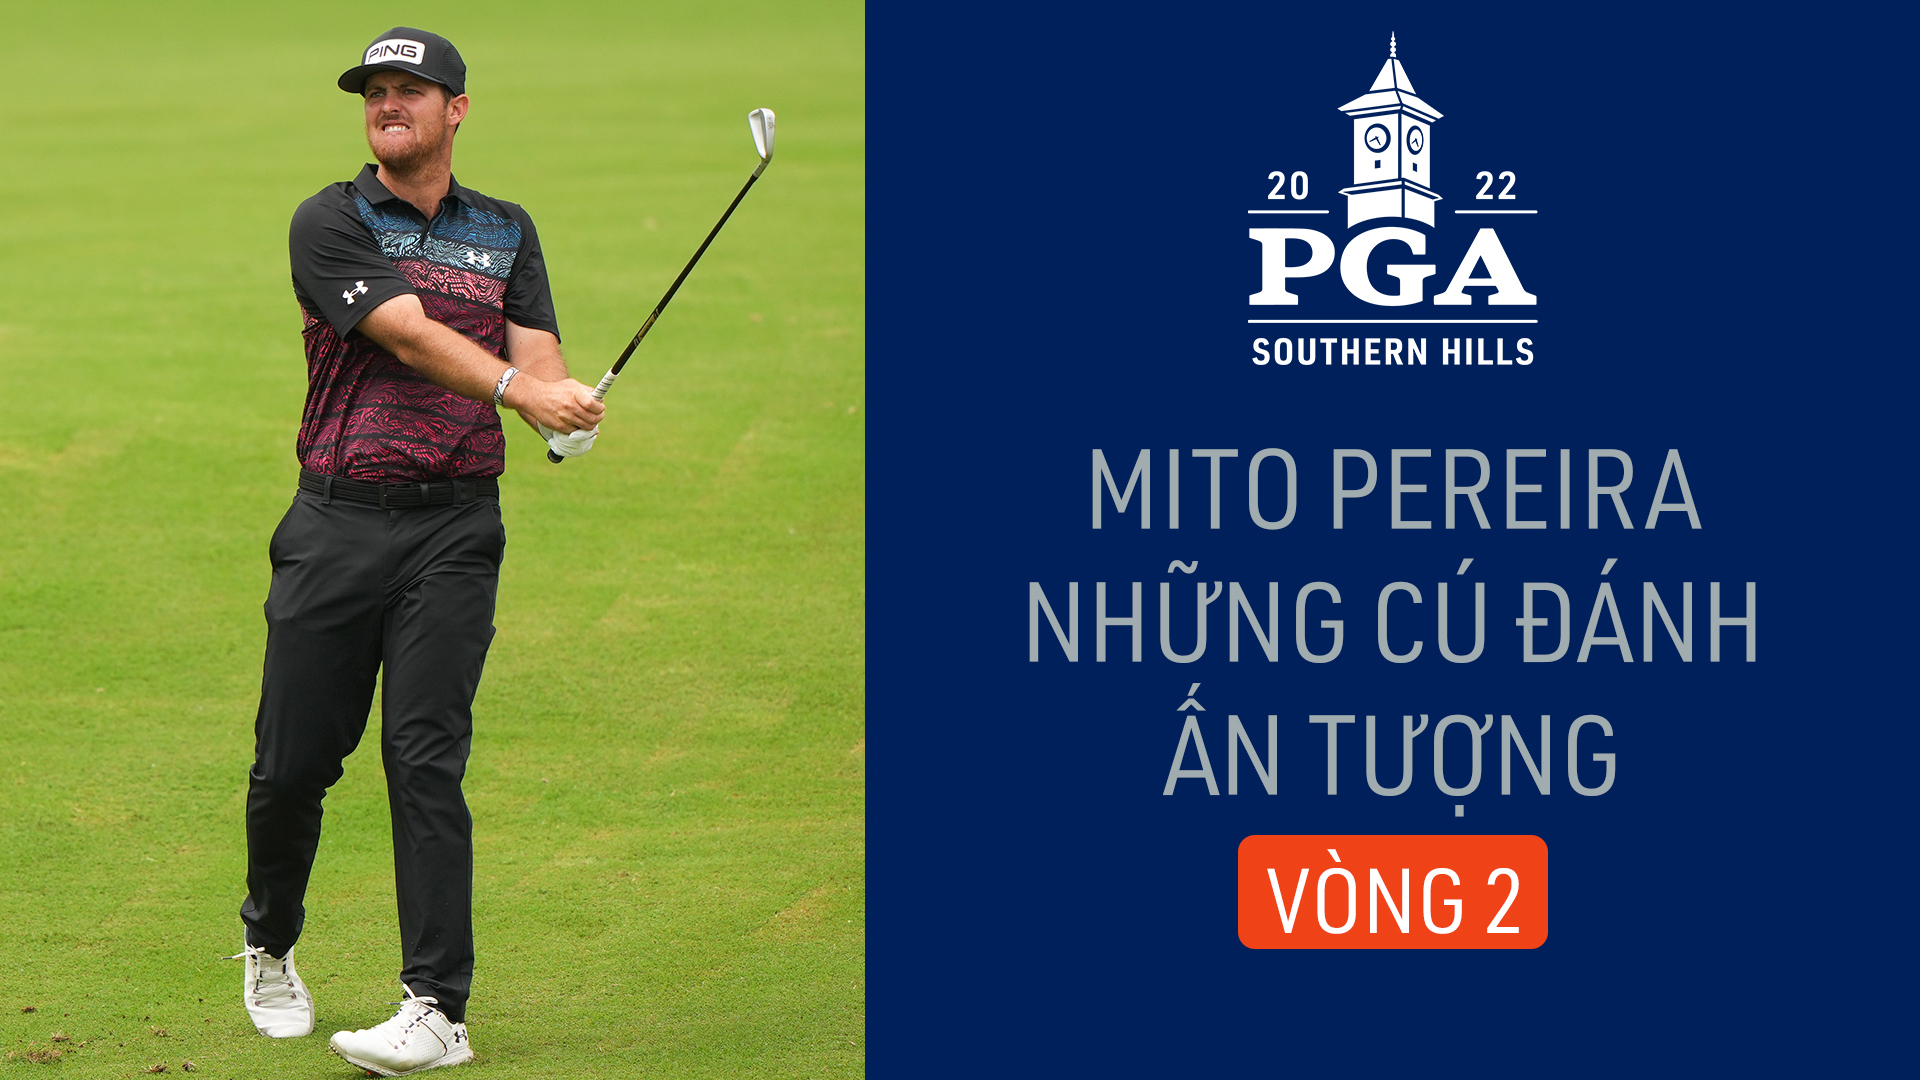 Mito Pereira và những cú đánh ấn tượng tại vòng 2 PGA